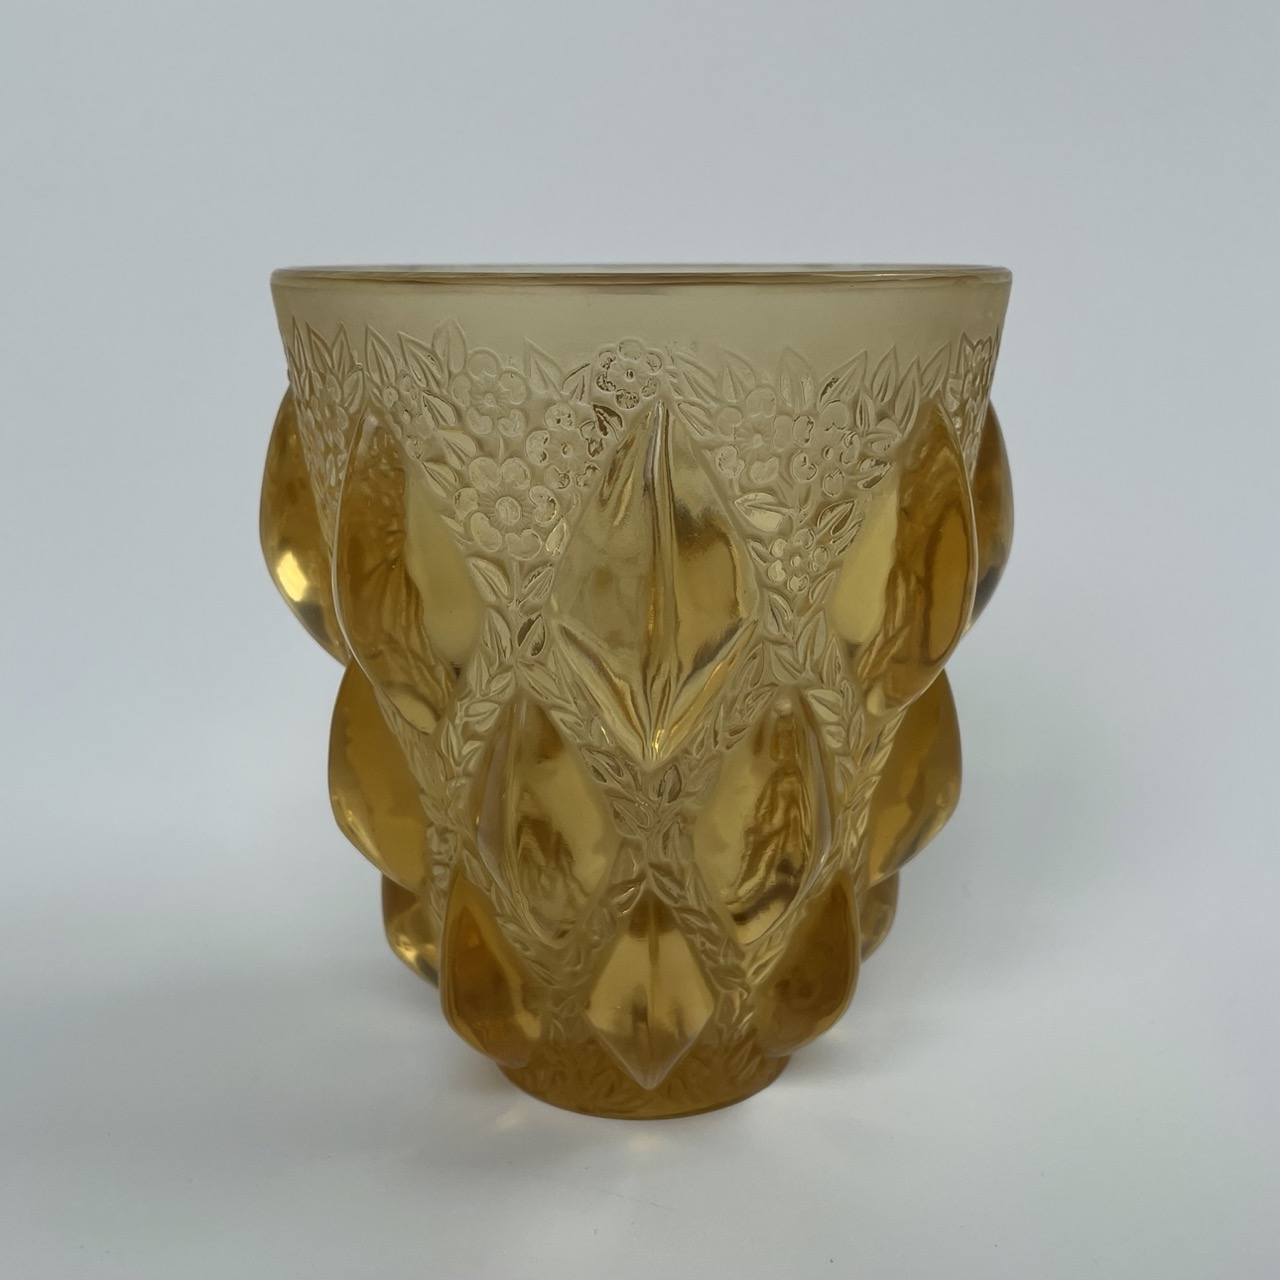 ваза “Rampillon ”, Rene Lalique